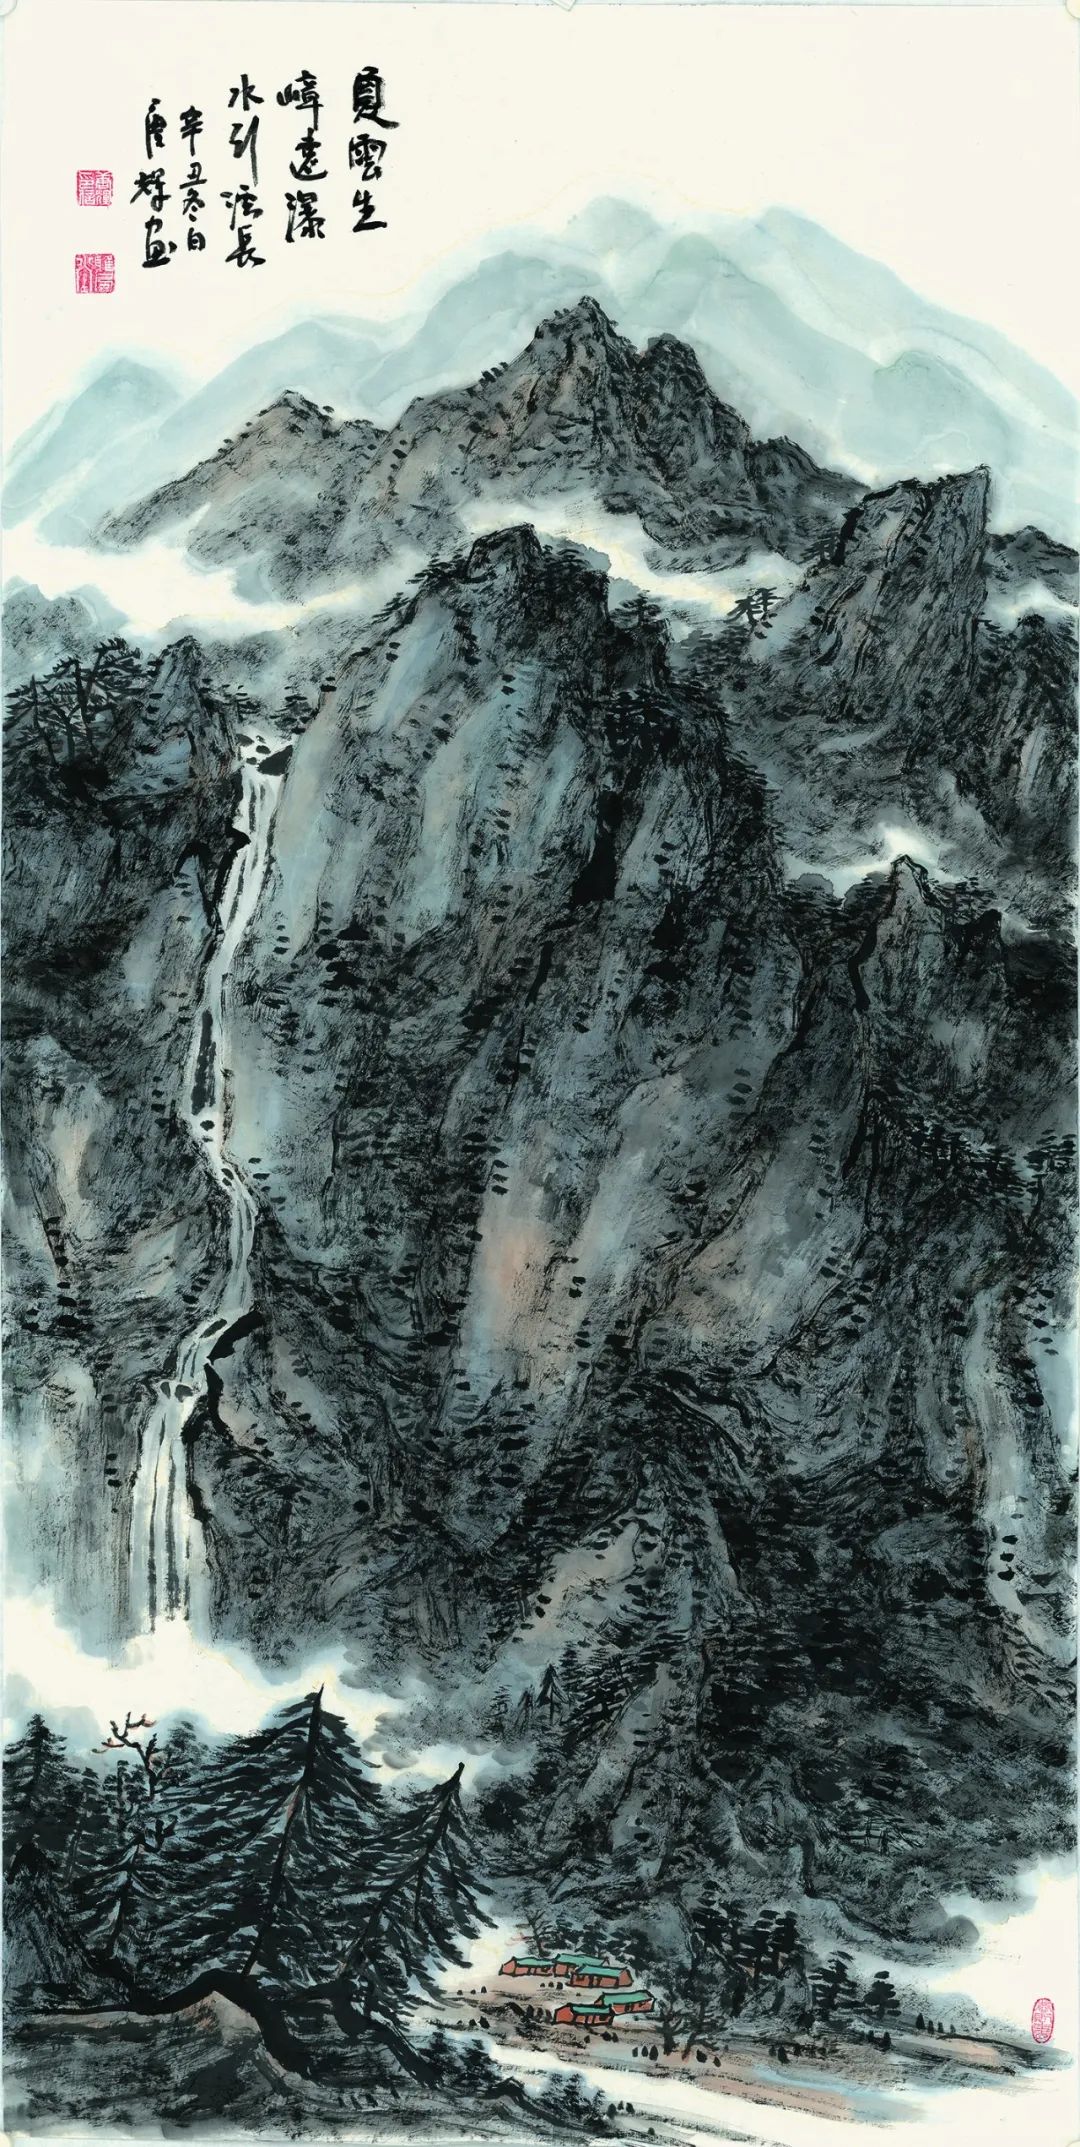 以心造境，内美焕然——著名画家唐辉山水画的精神境界